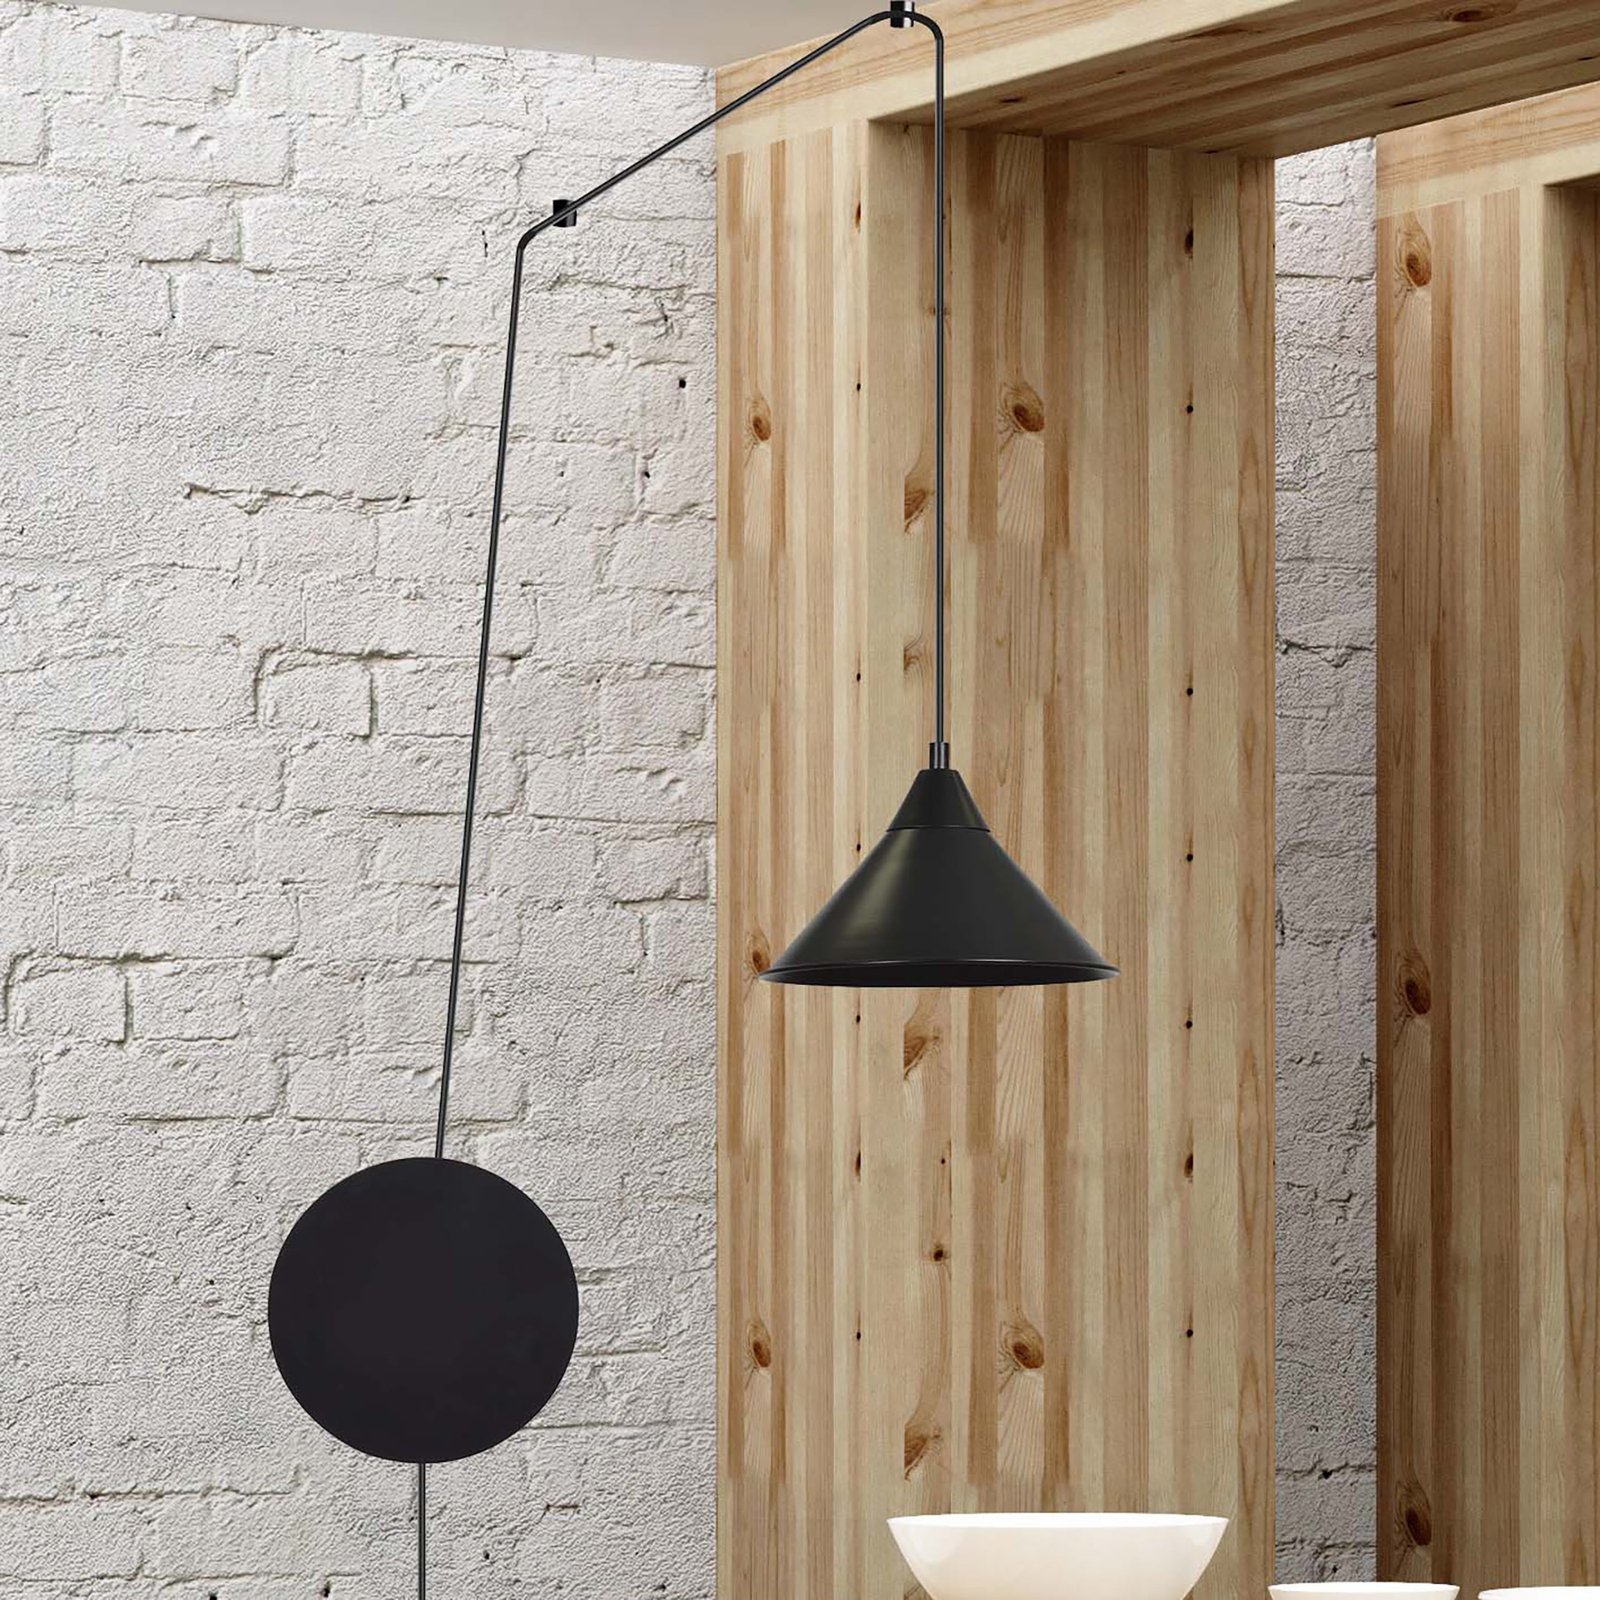 Overzicht abstract zadel Hanglamp Ramo, 1-lamp, zwart | Lampen24.be